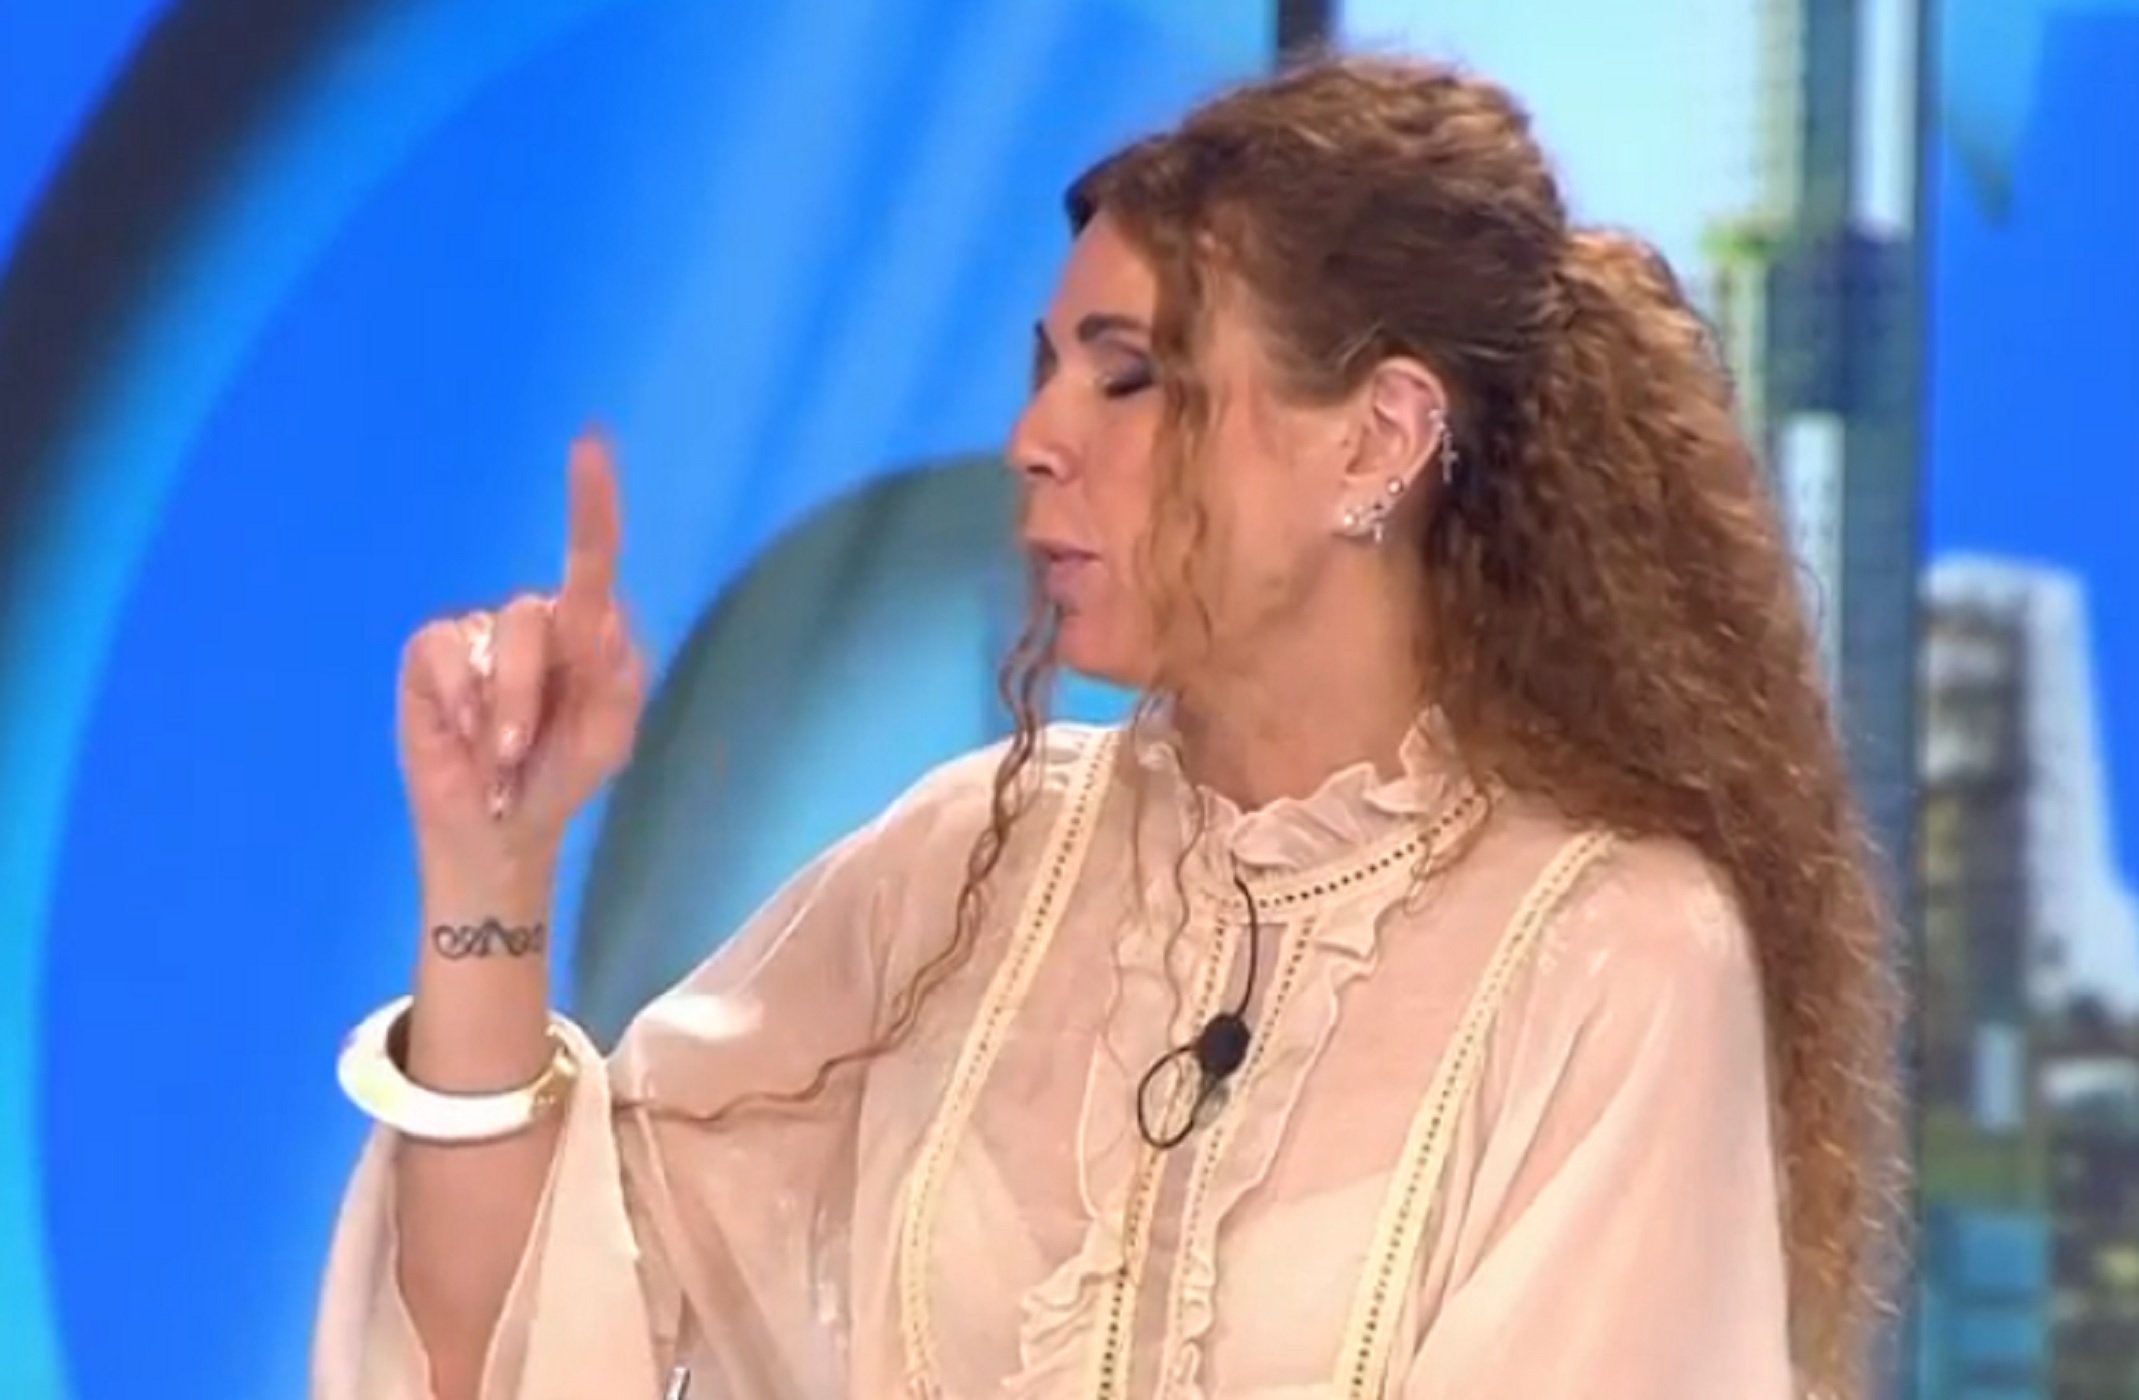 Tensió entre Tatiana Arús i la seva mare Angie a 'Aruser@s': "calaix de merda"